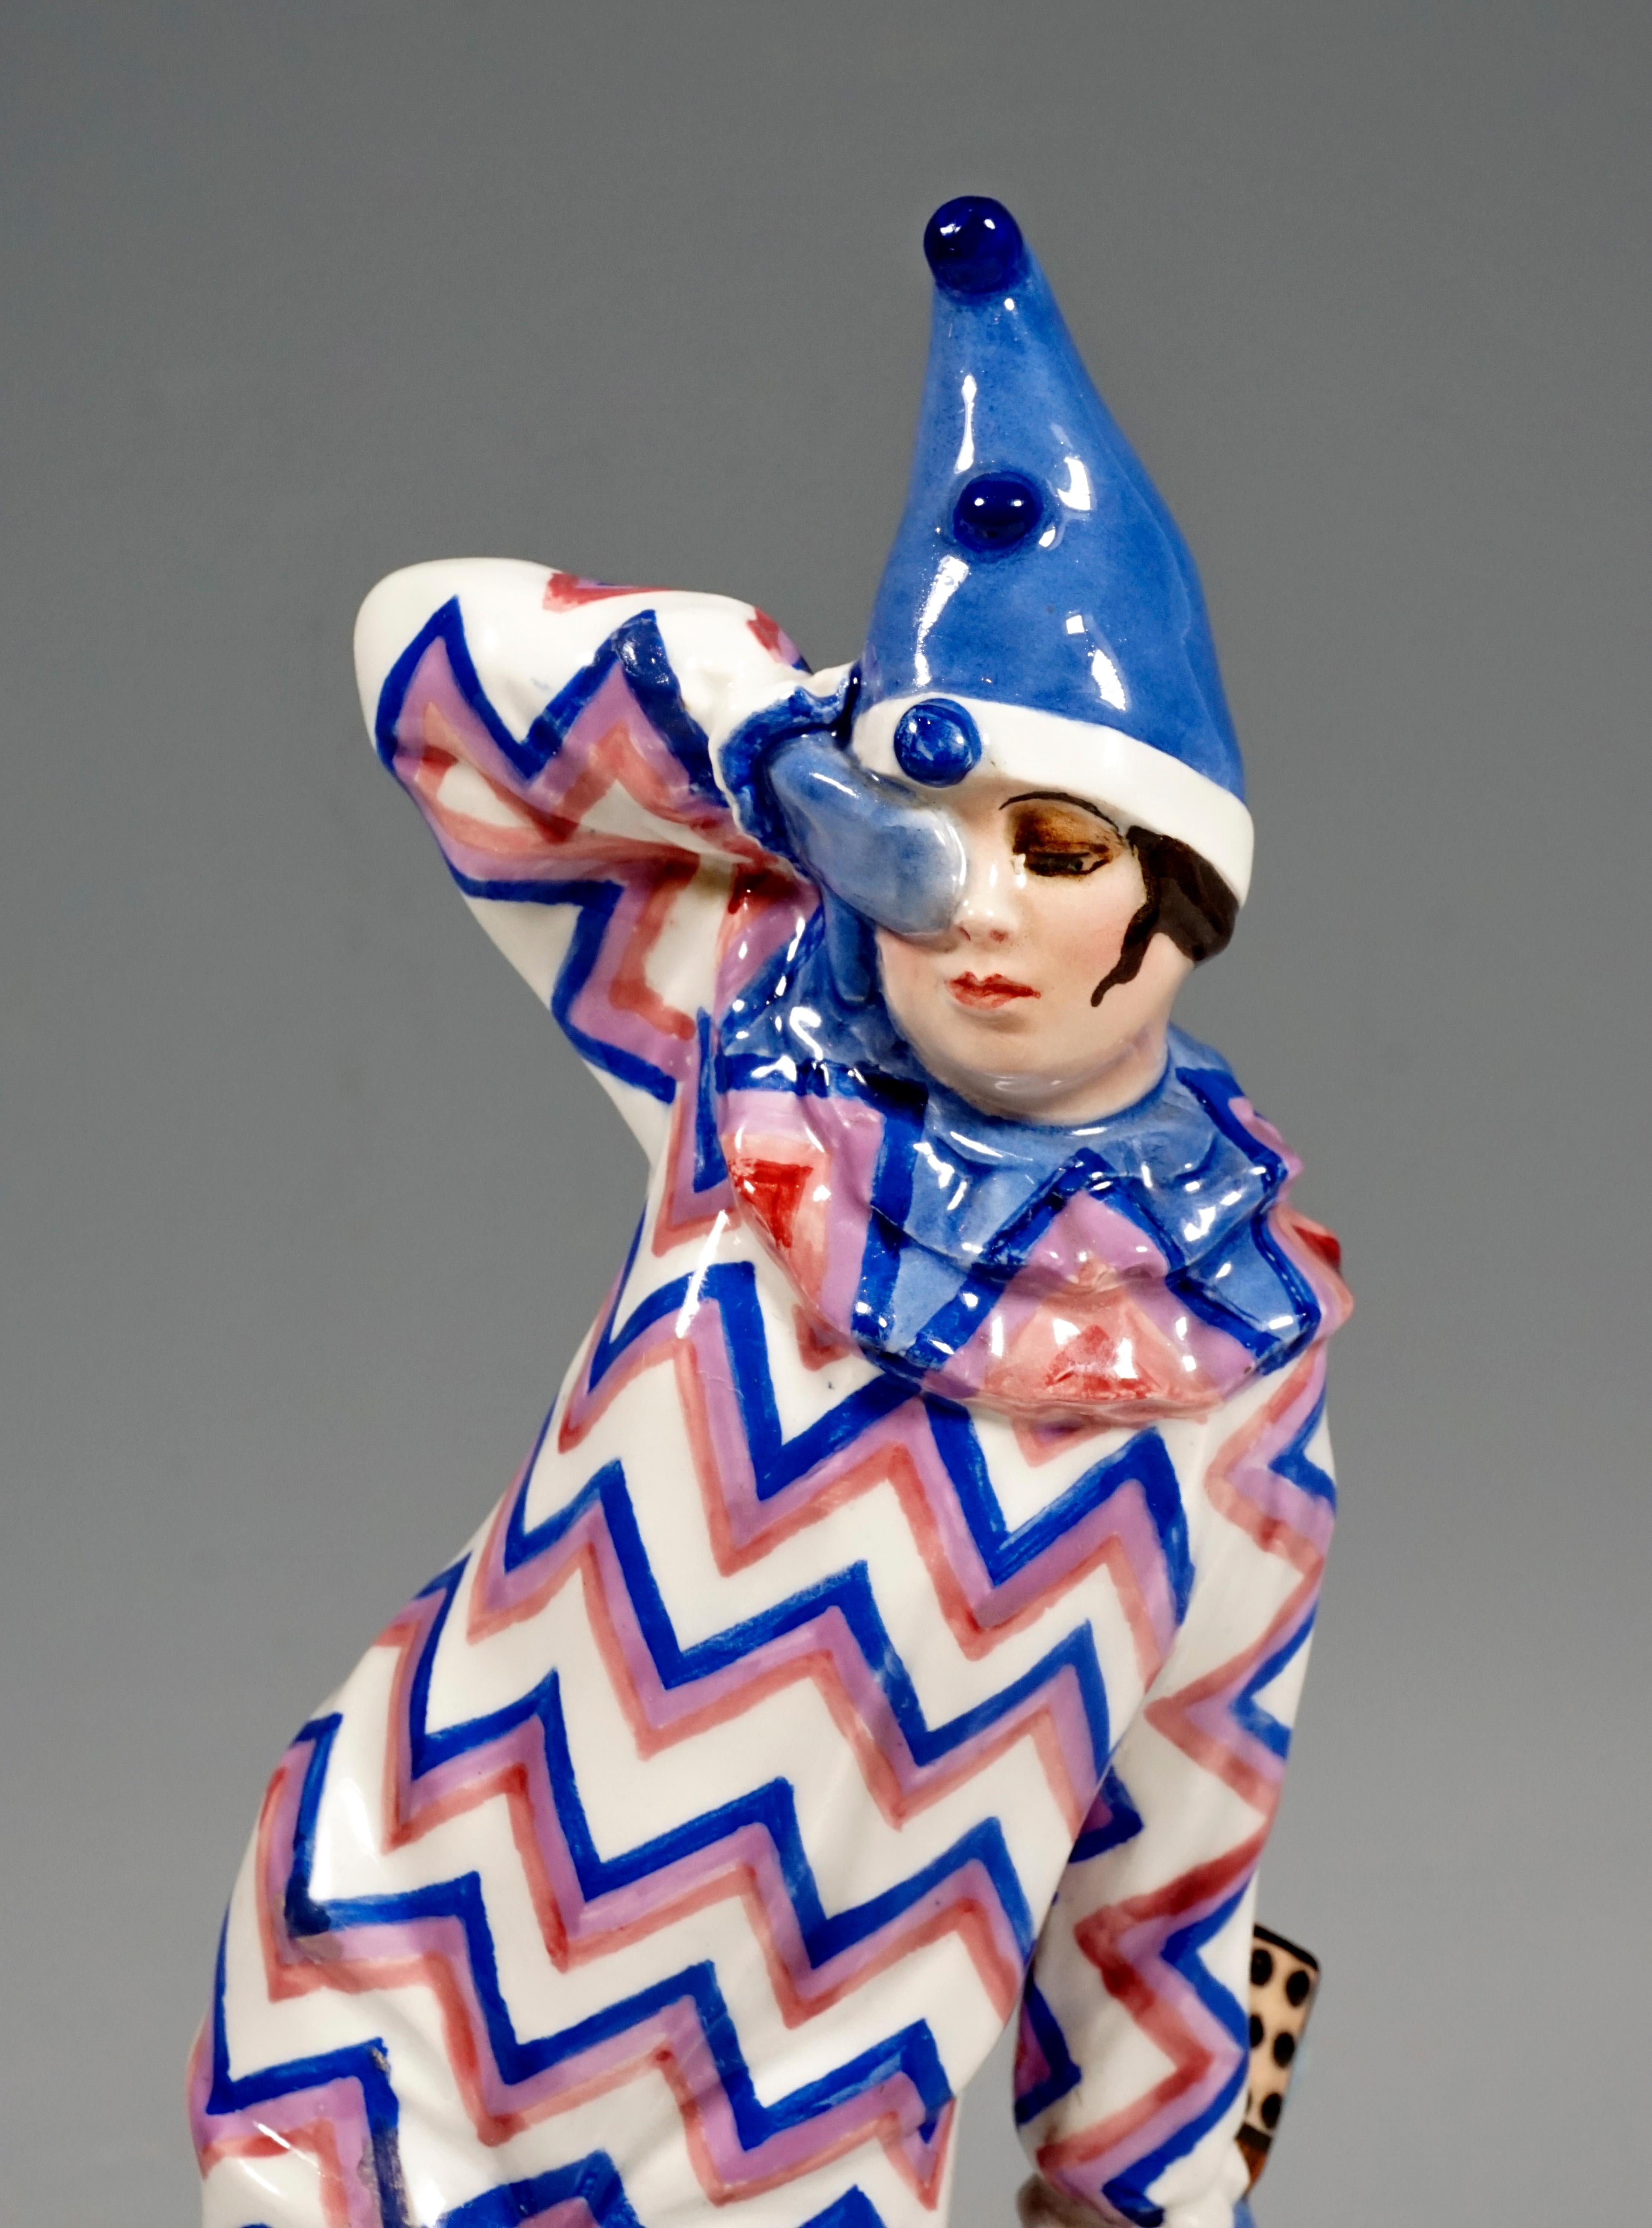 Austrian Goldscheider Figurine Niddy Impekoven as 'Erna Pinner Doll' by J. Lorenzl, 1922